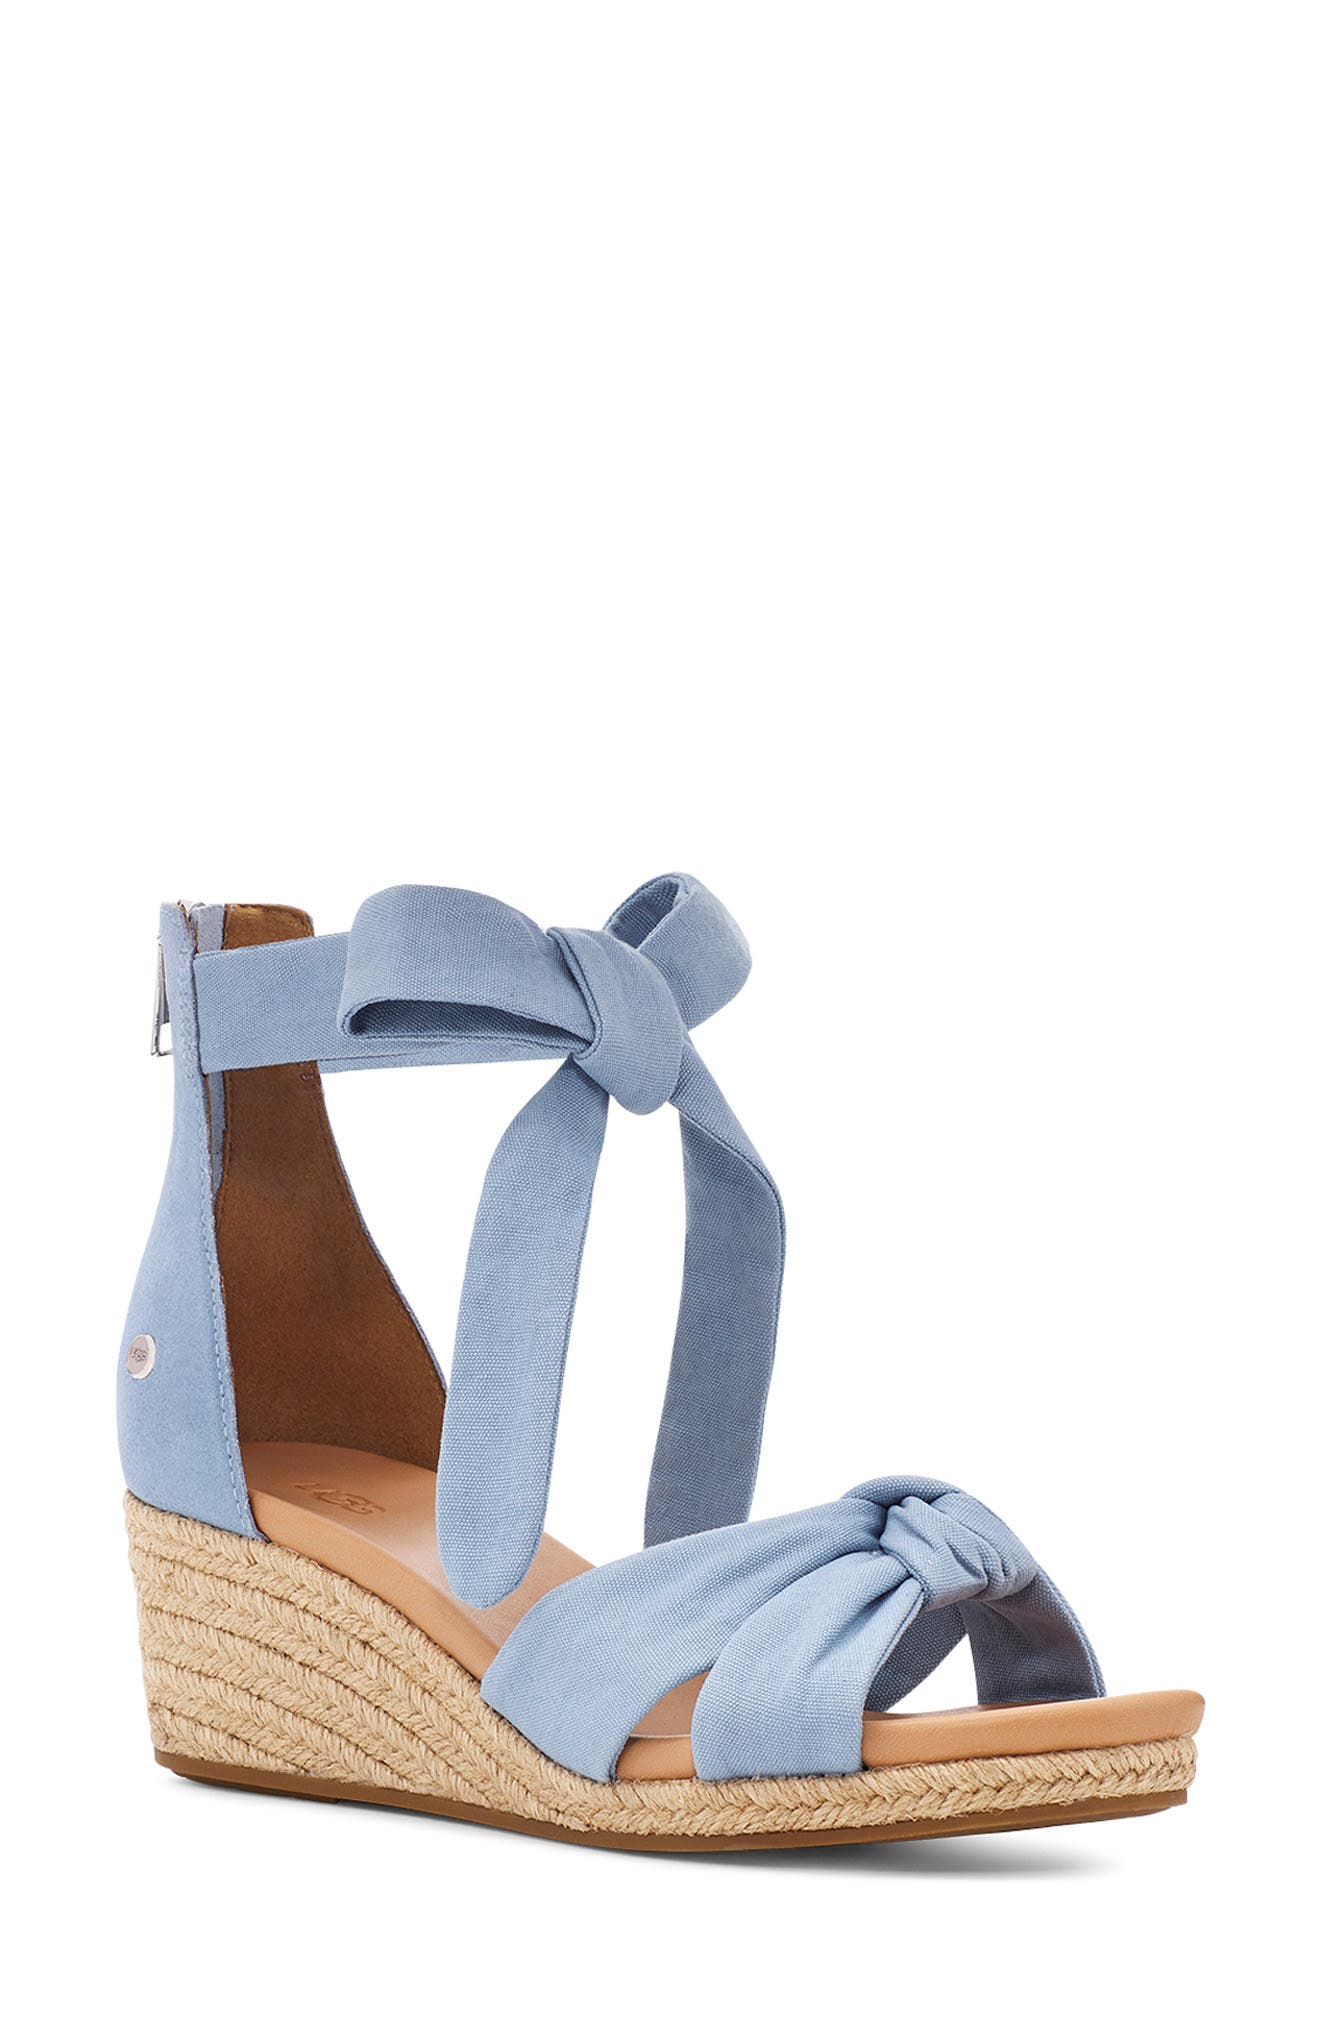 ugg blue sandals